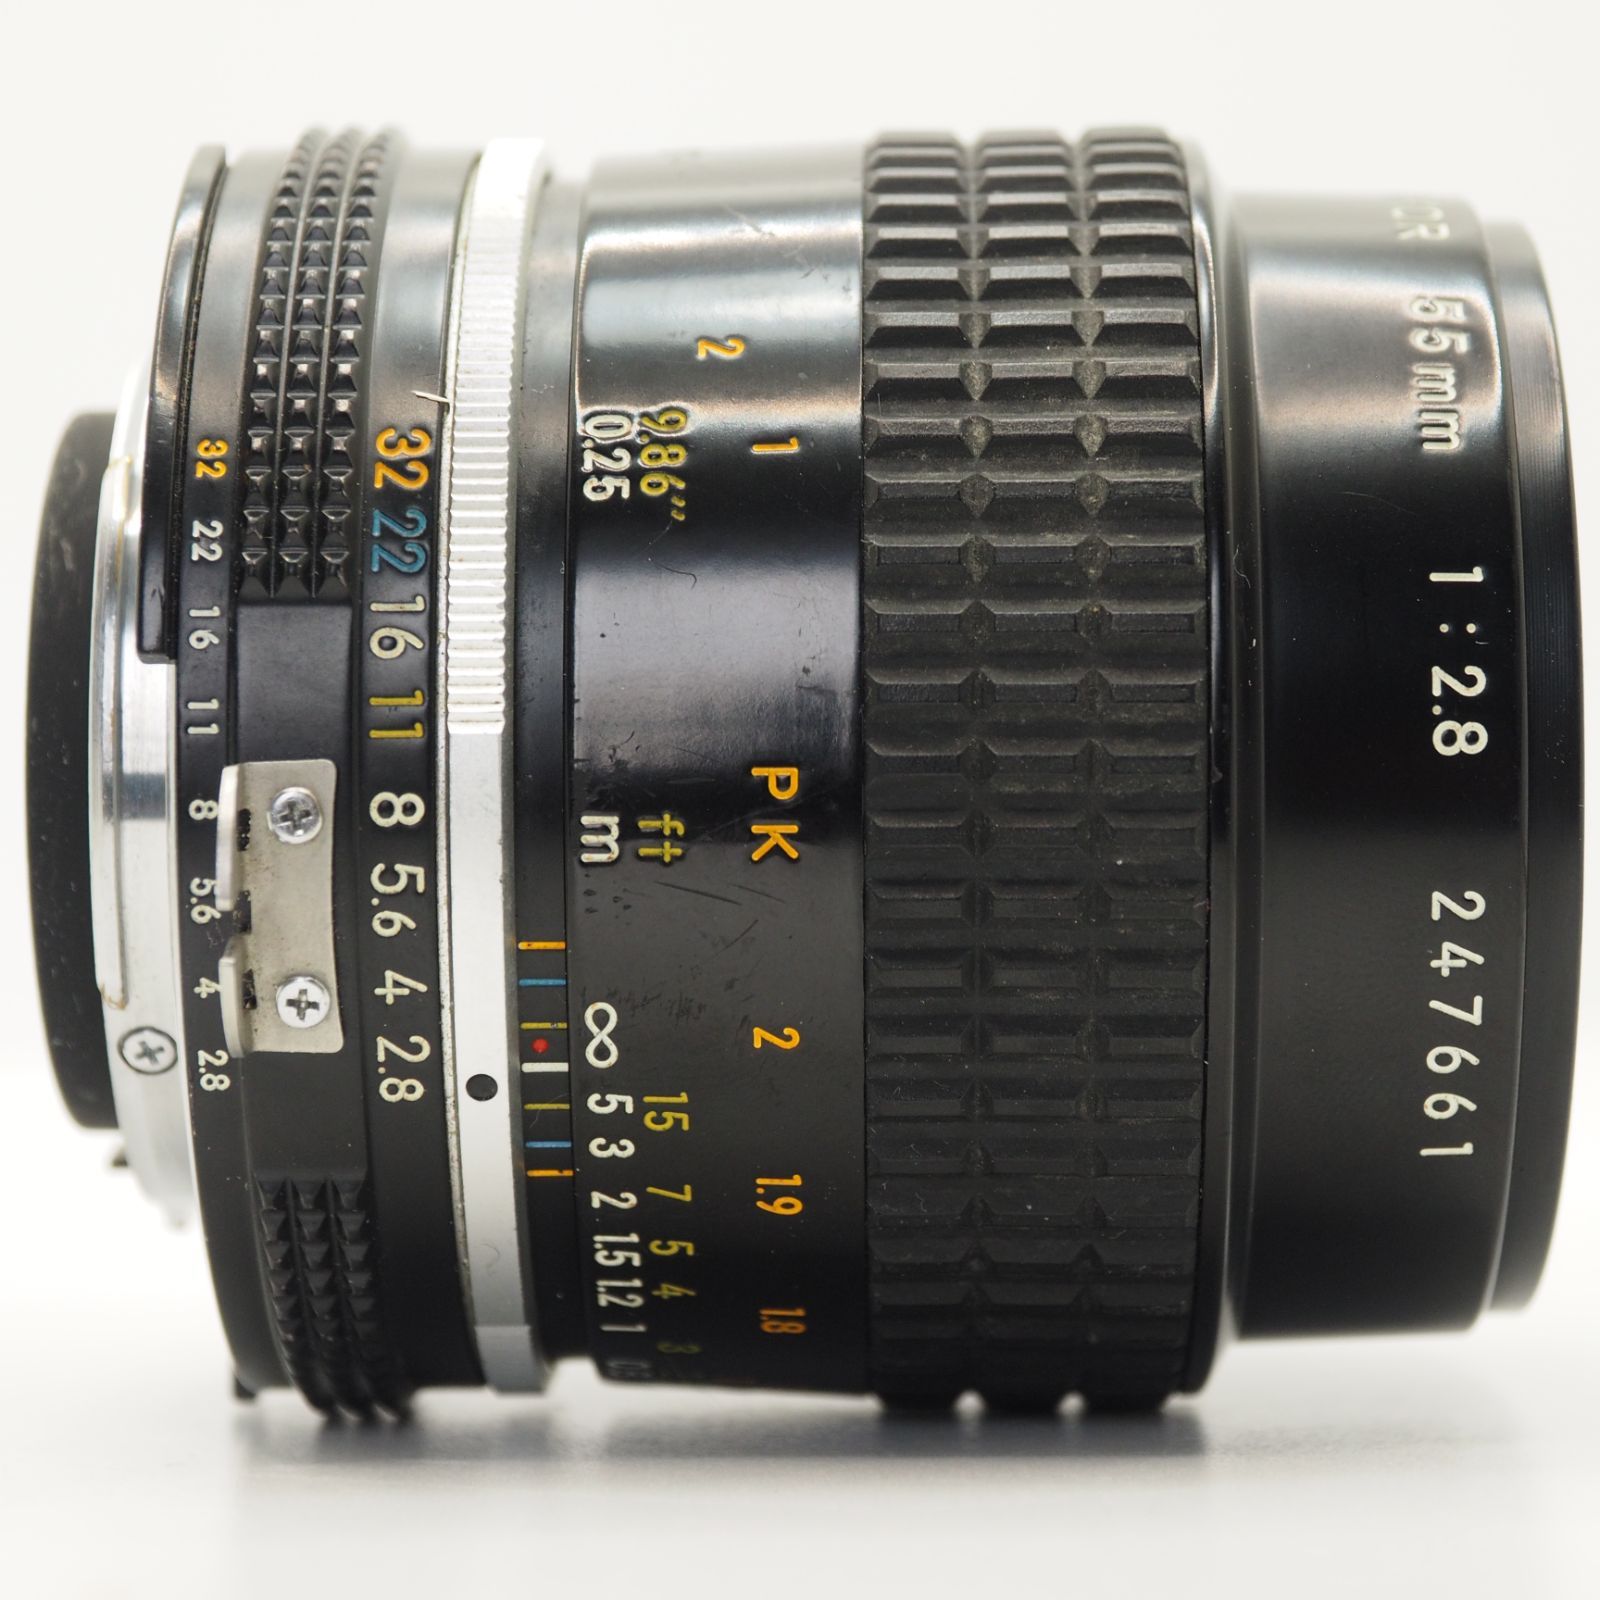 ニコン Nikon Ai-s Ais Micro Nikkor 55mm f/2.8 MF Macro Lens [美品